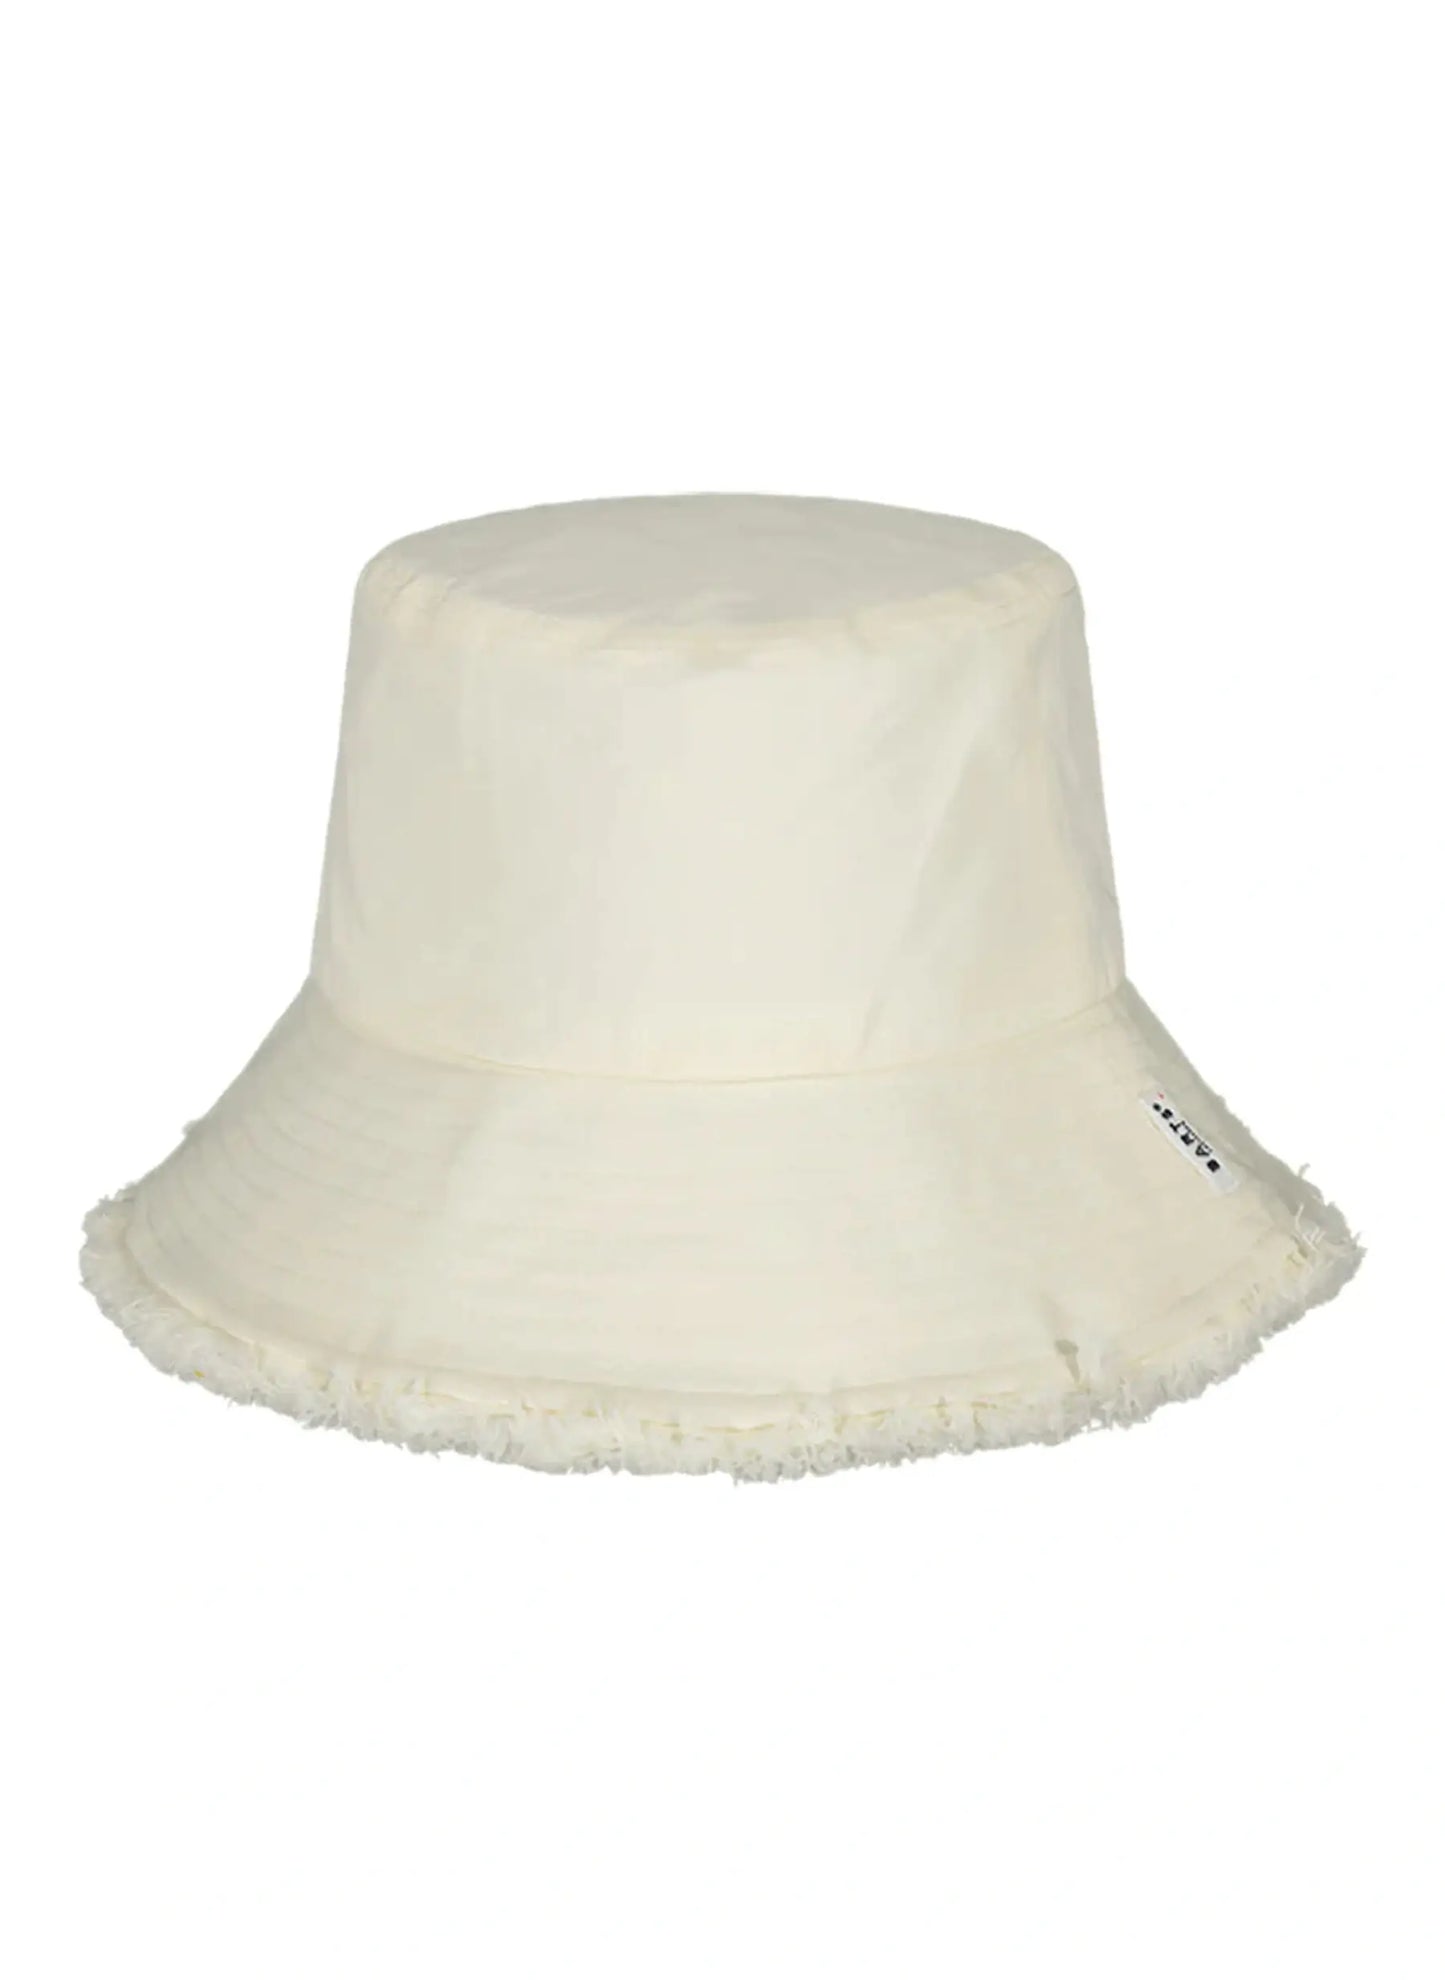 Huahina Hat - Cream